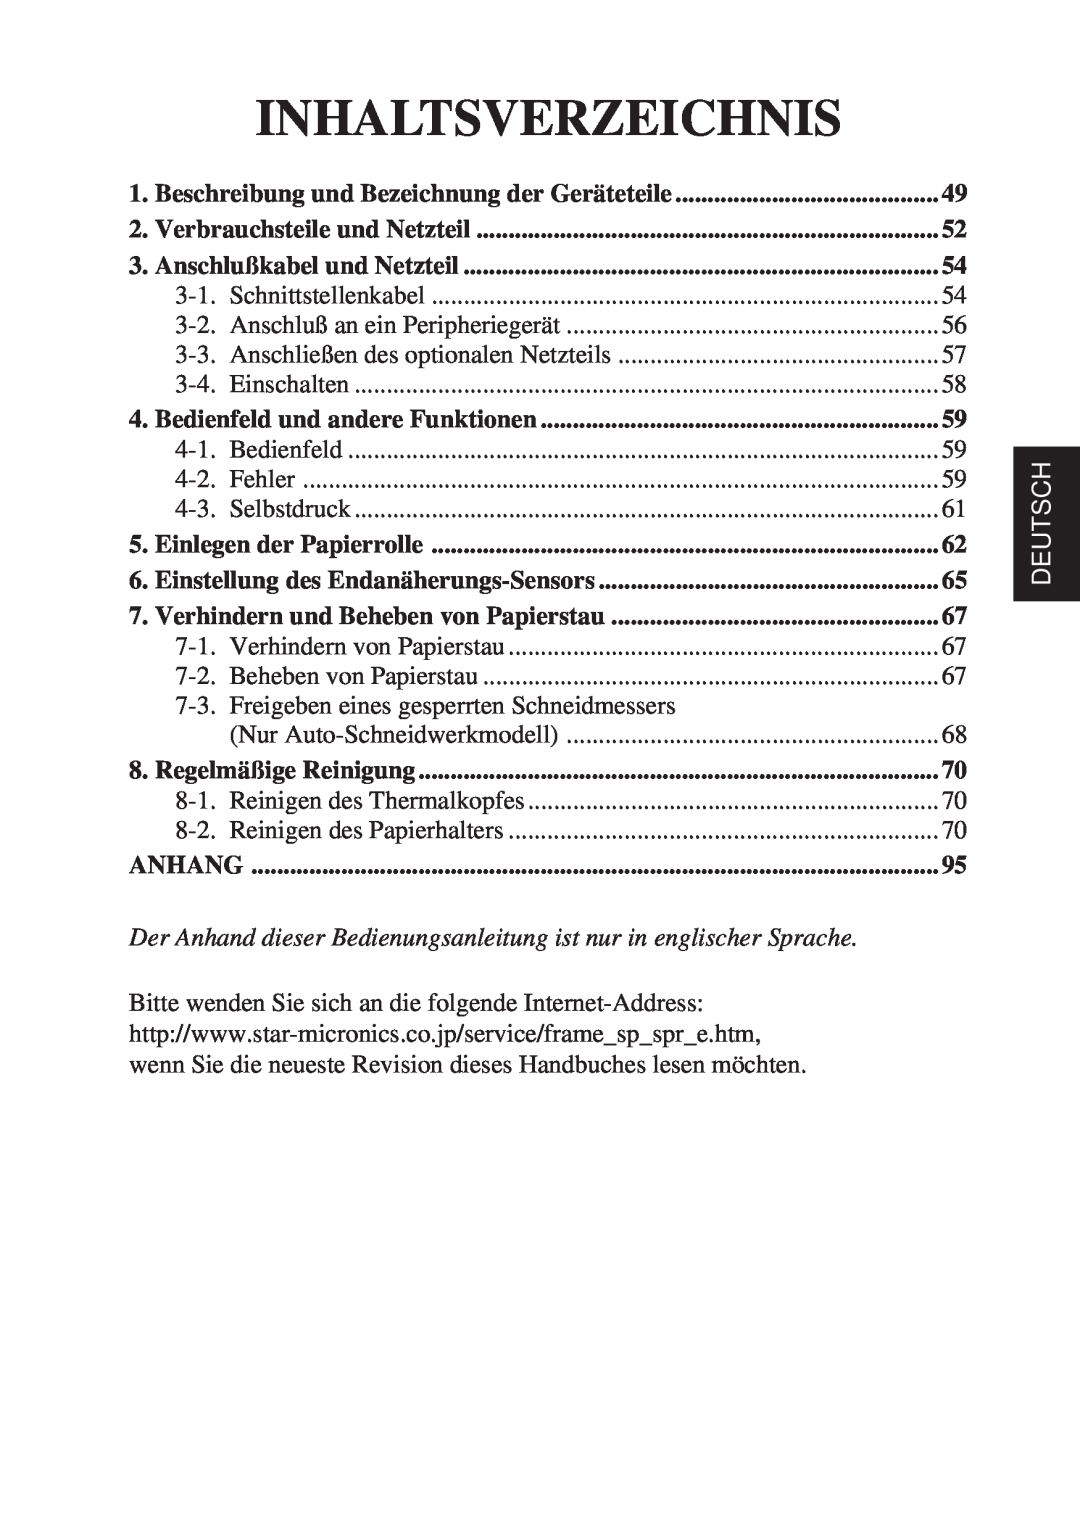 Star Micronics TSP600 user manual Inhaltsverzeichnis, Deutsch 